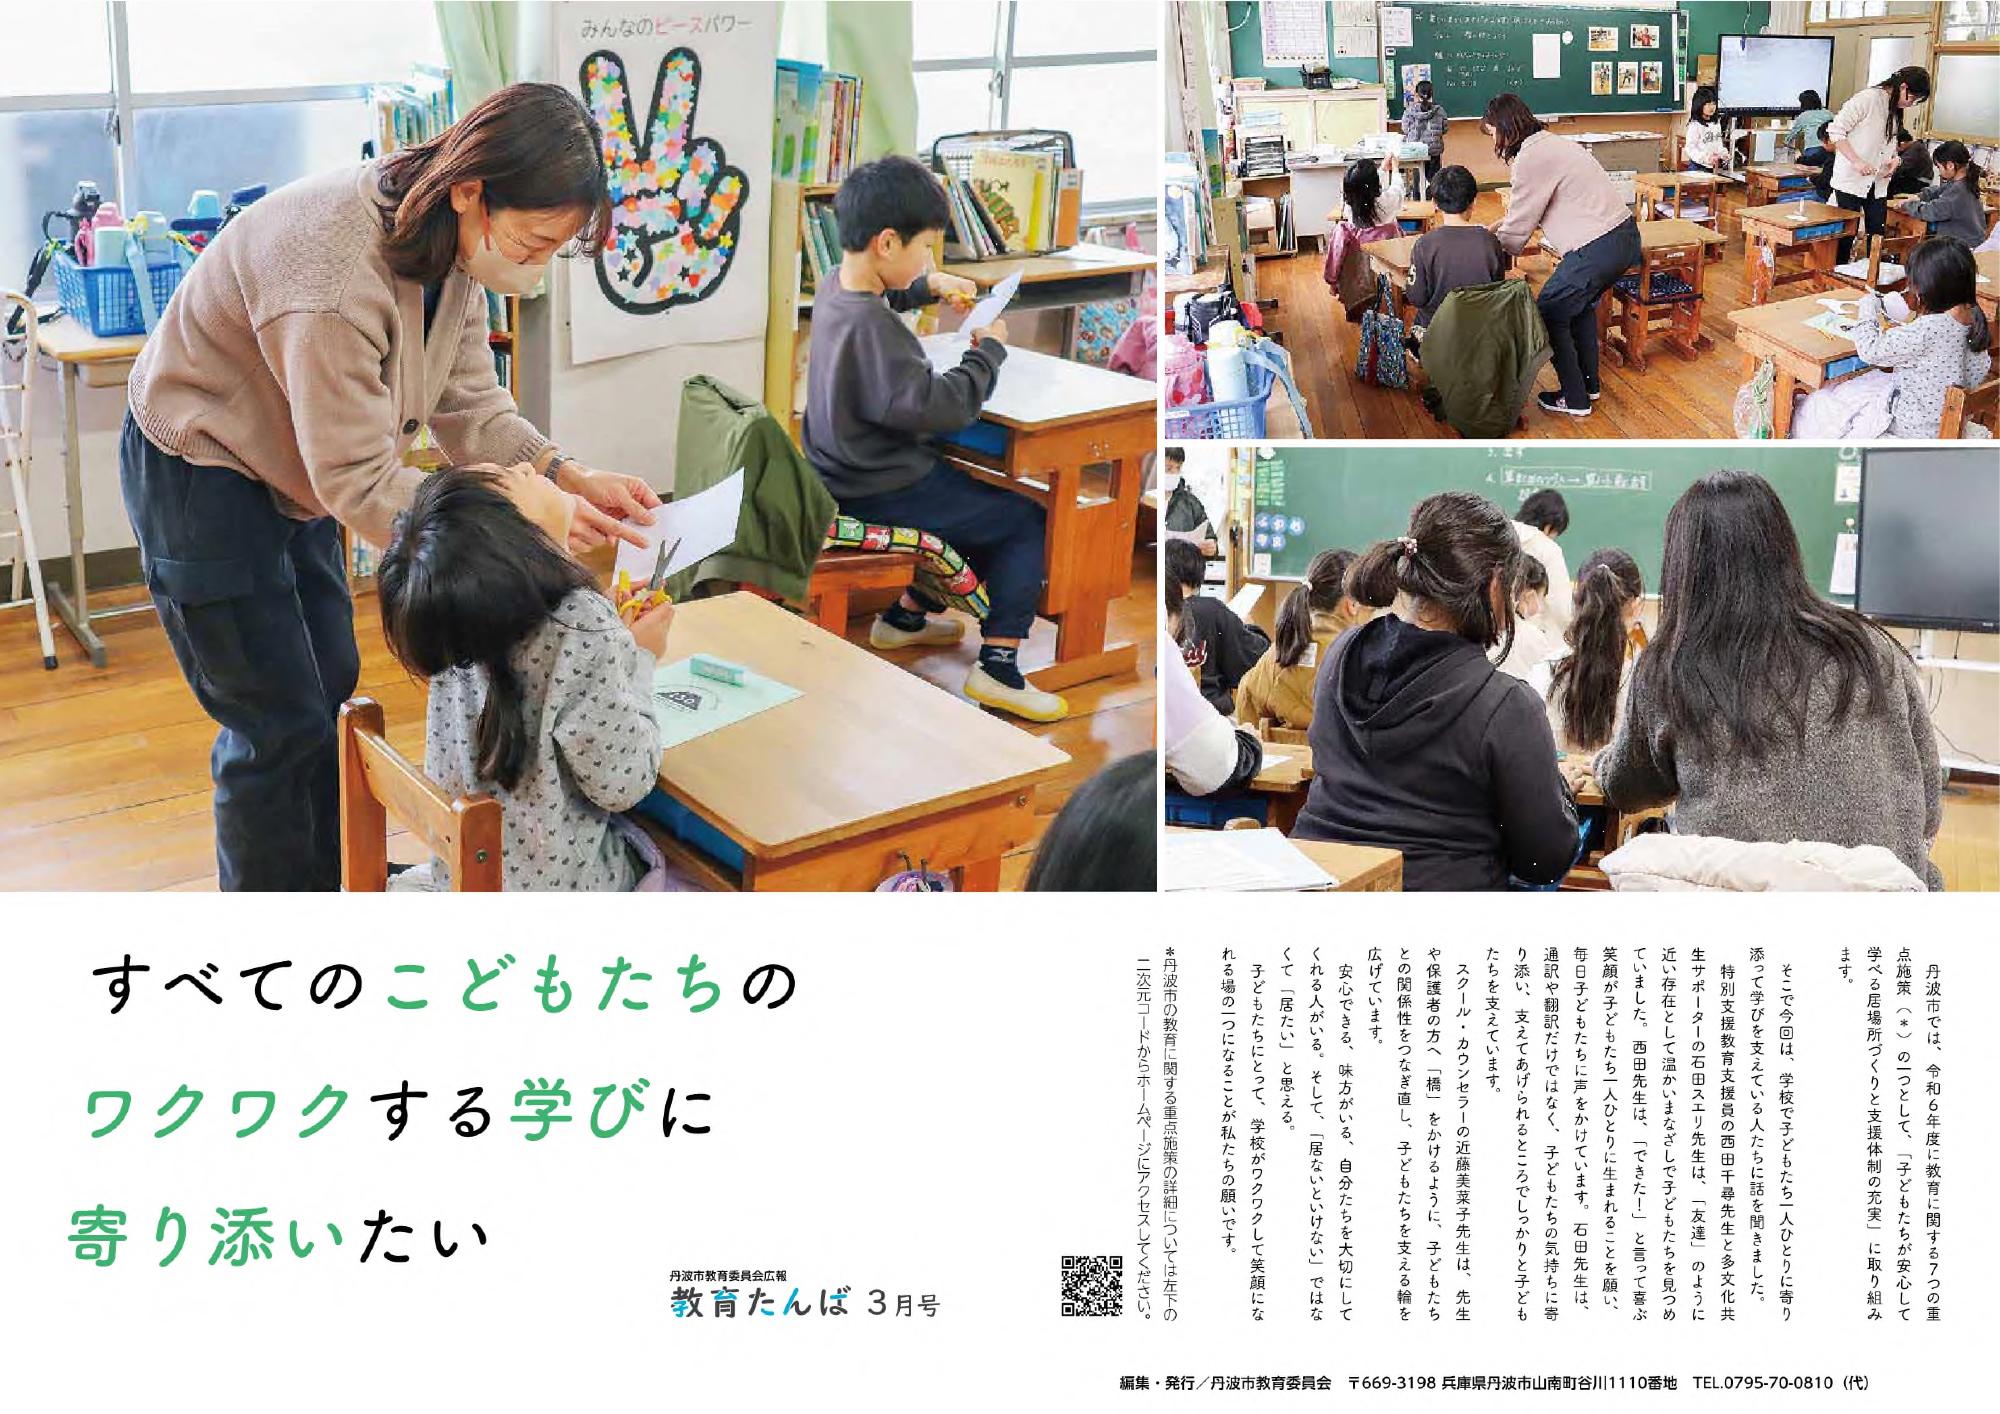 広報・教育たんば3月号の表紙。教室のなかで子どもたちの学習を支援している人の写真。